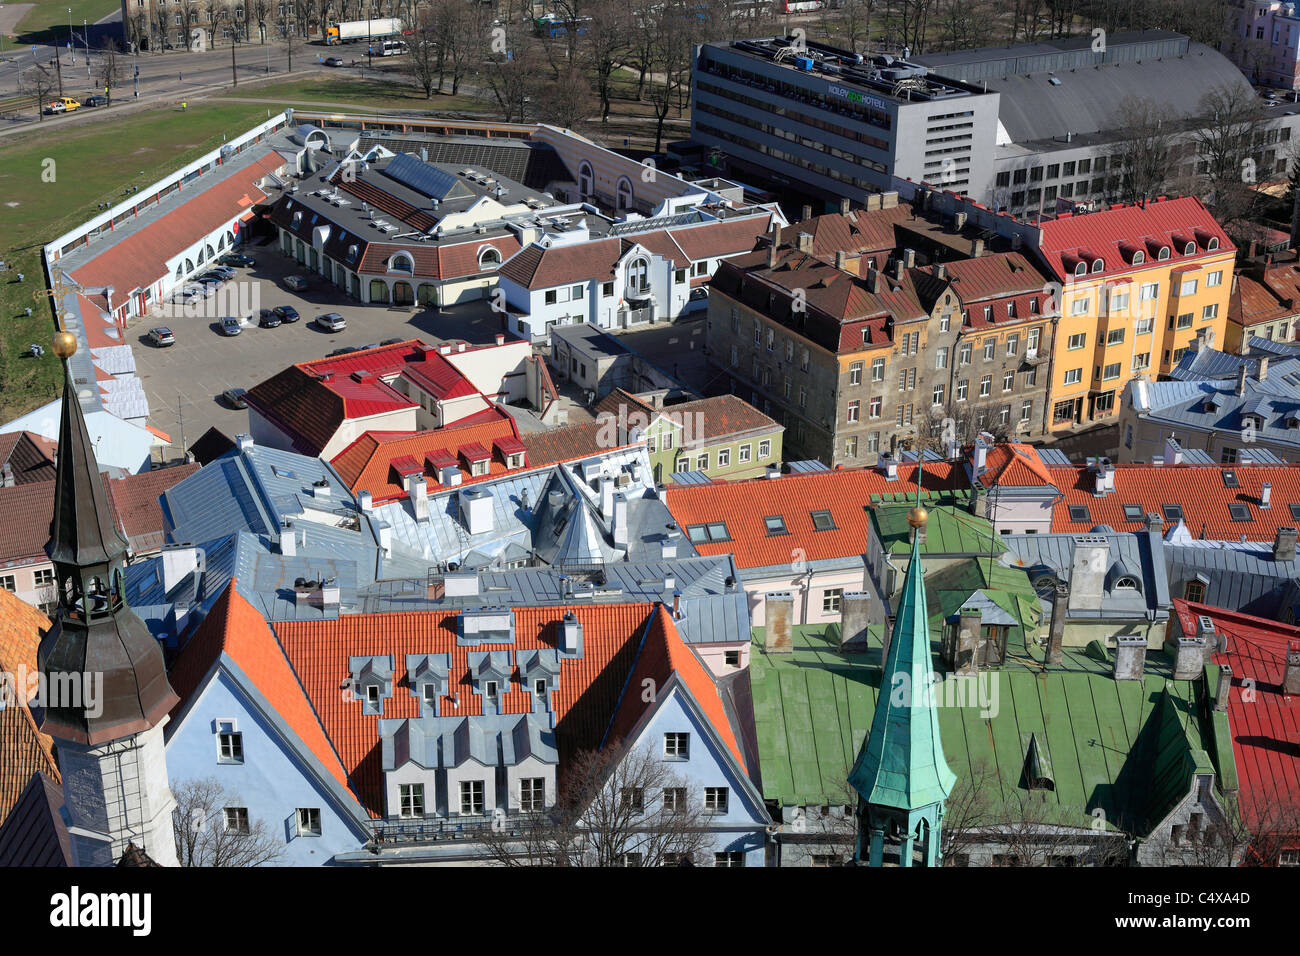 Historic Centre (Old Town), Tallinn, Estonia Stock Photo